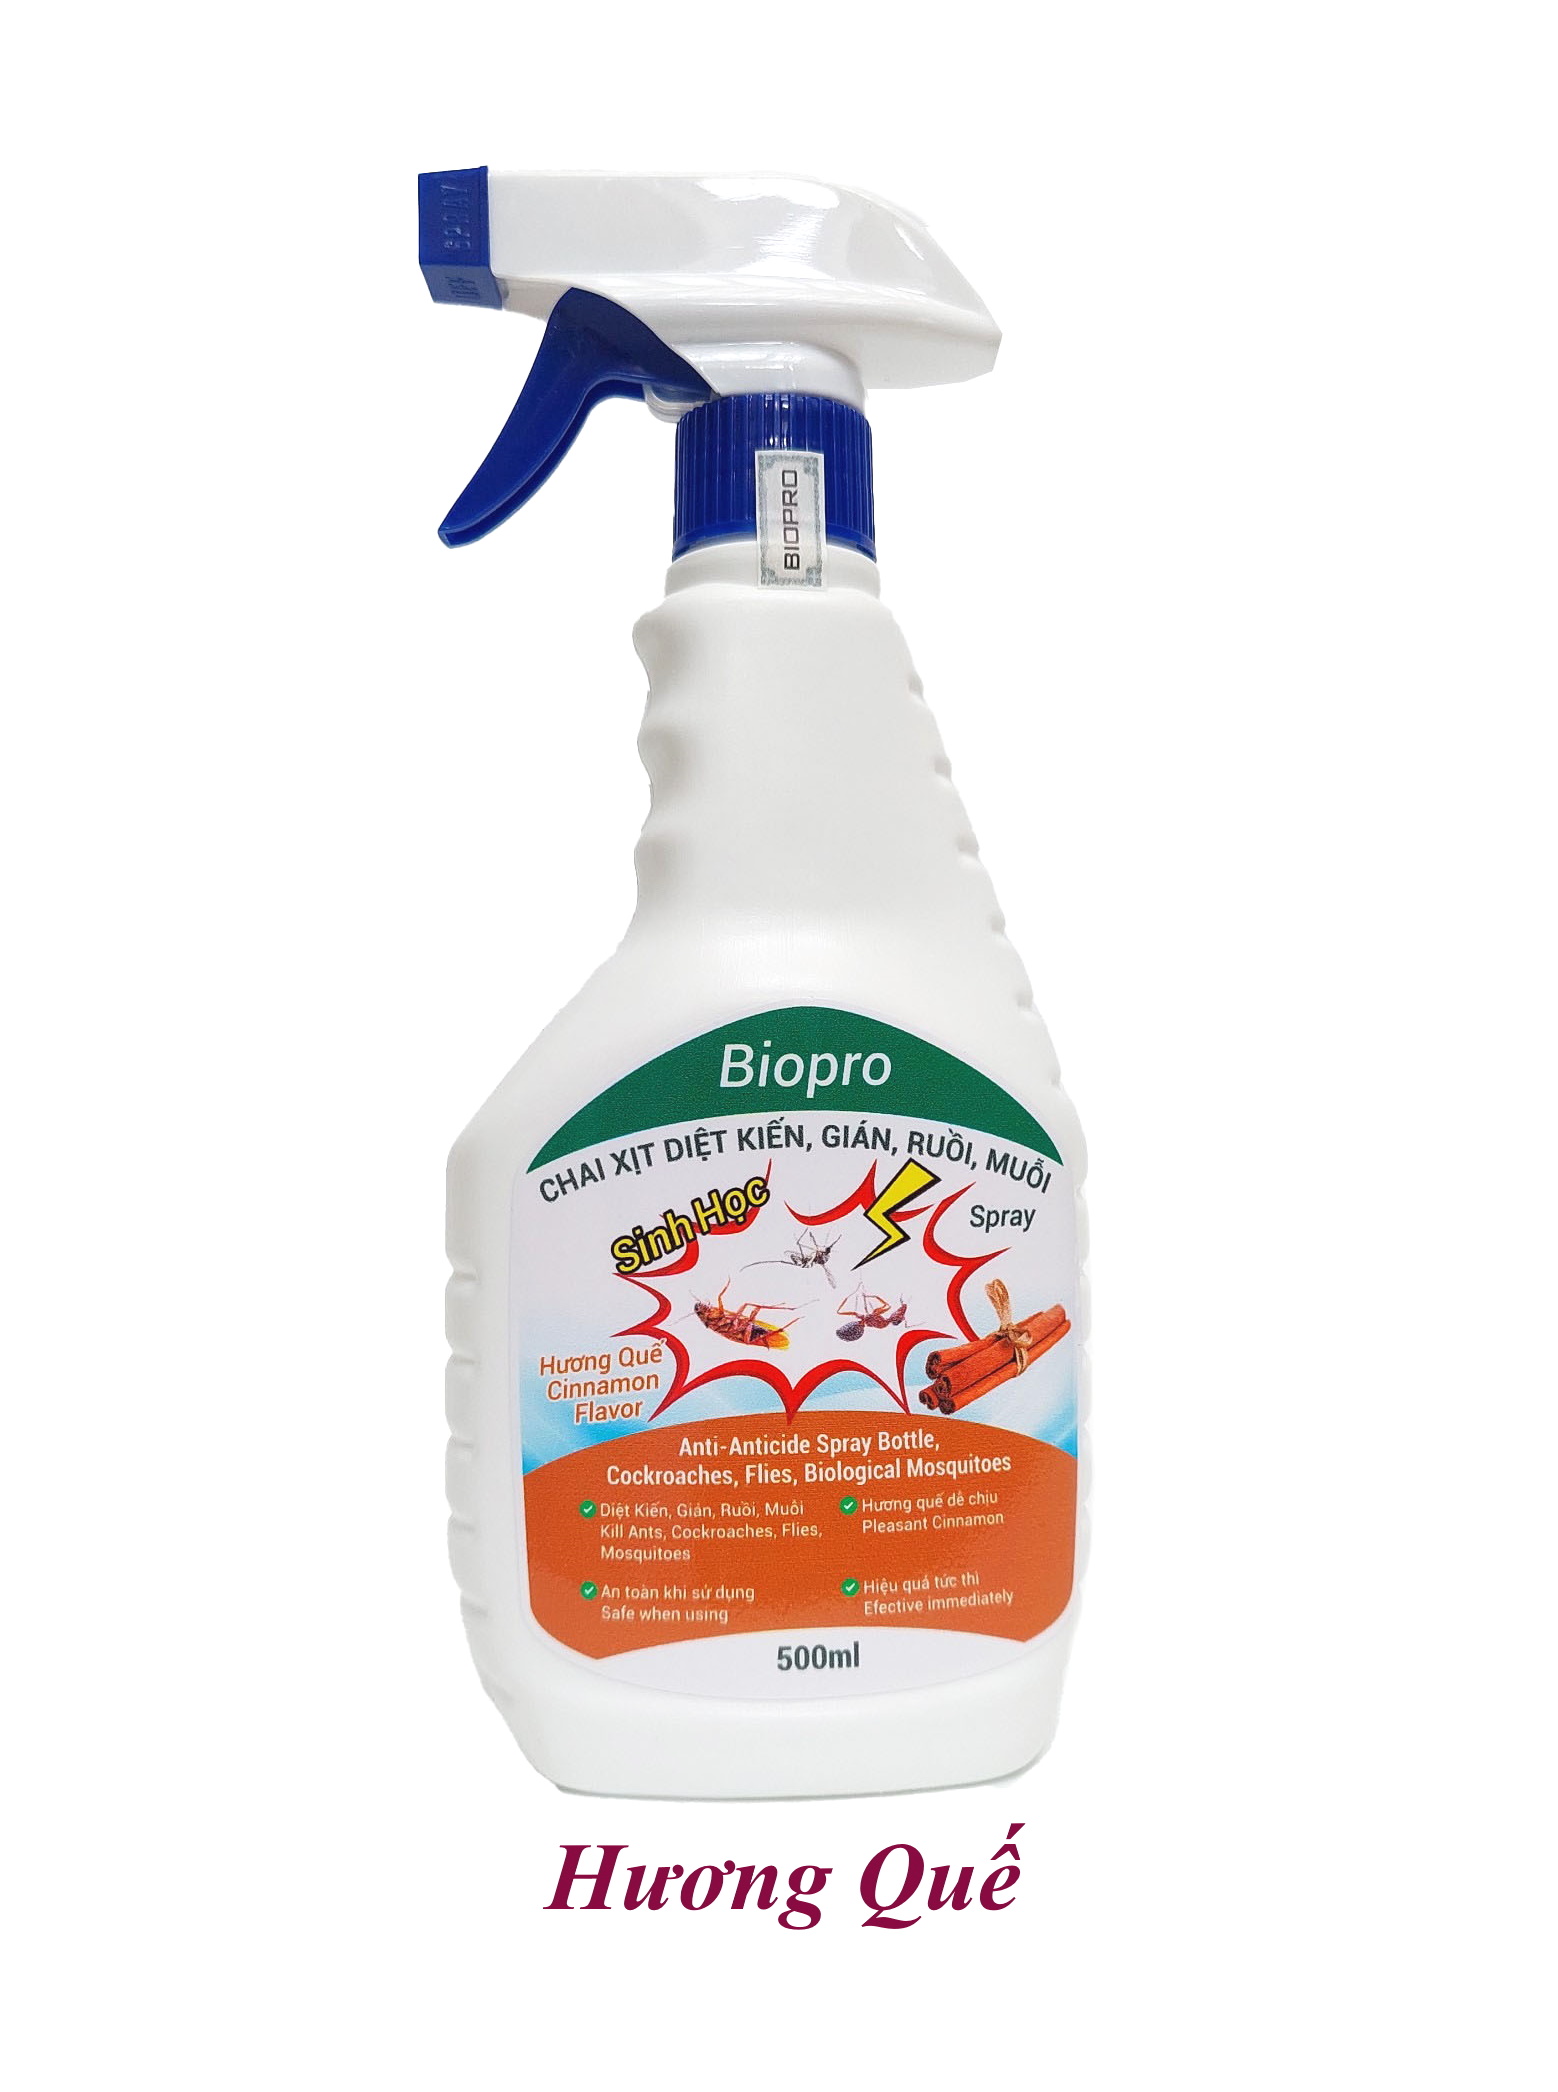 Chai dạng xịt 500ml. Thuốc Diệt kiến Diệt gián Diệt ruồi Diệt muỗi Sinh học Biopro an toàn hiệu quả Nhiều hương lựa chọn